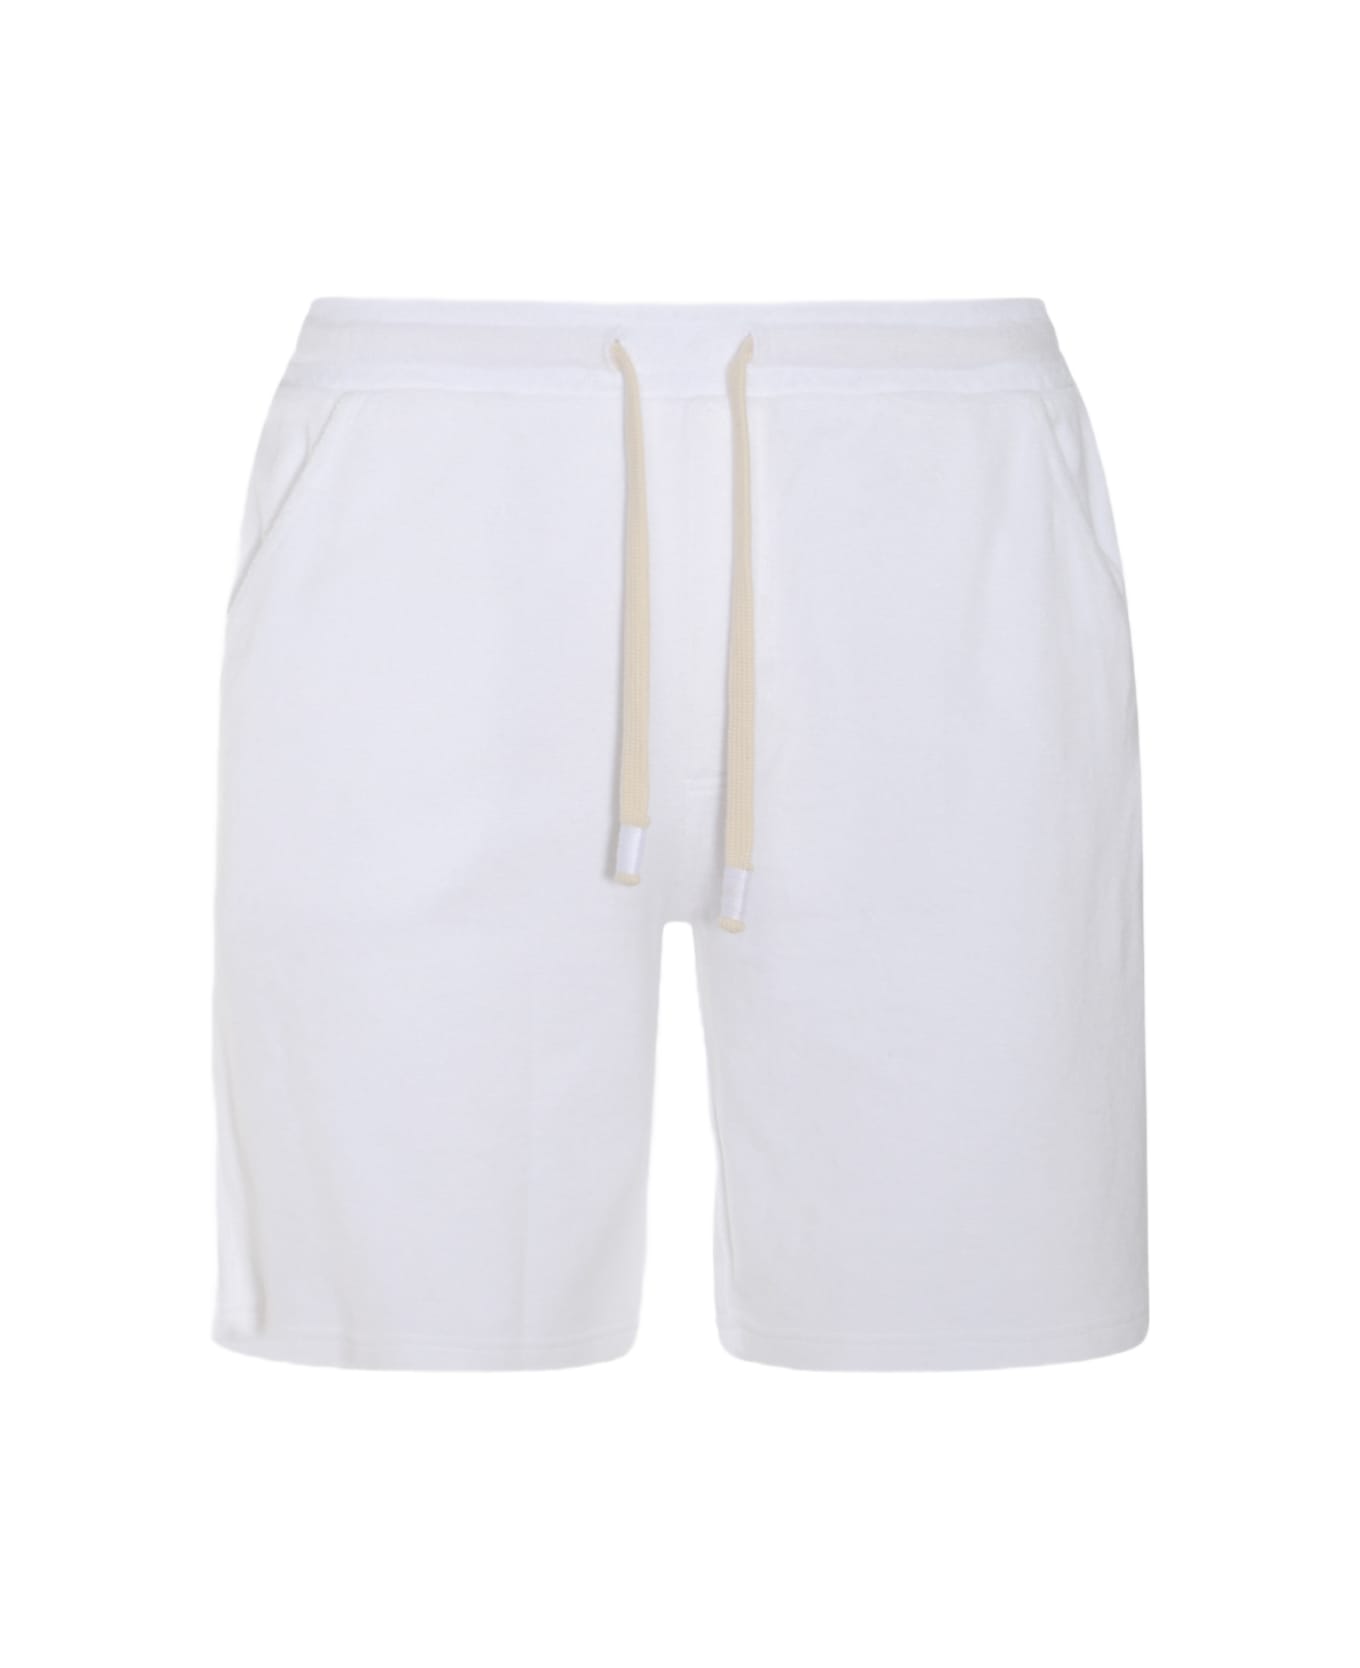 Altea White Cotton Shorts - White ショートパンツ